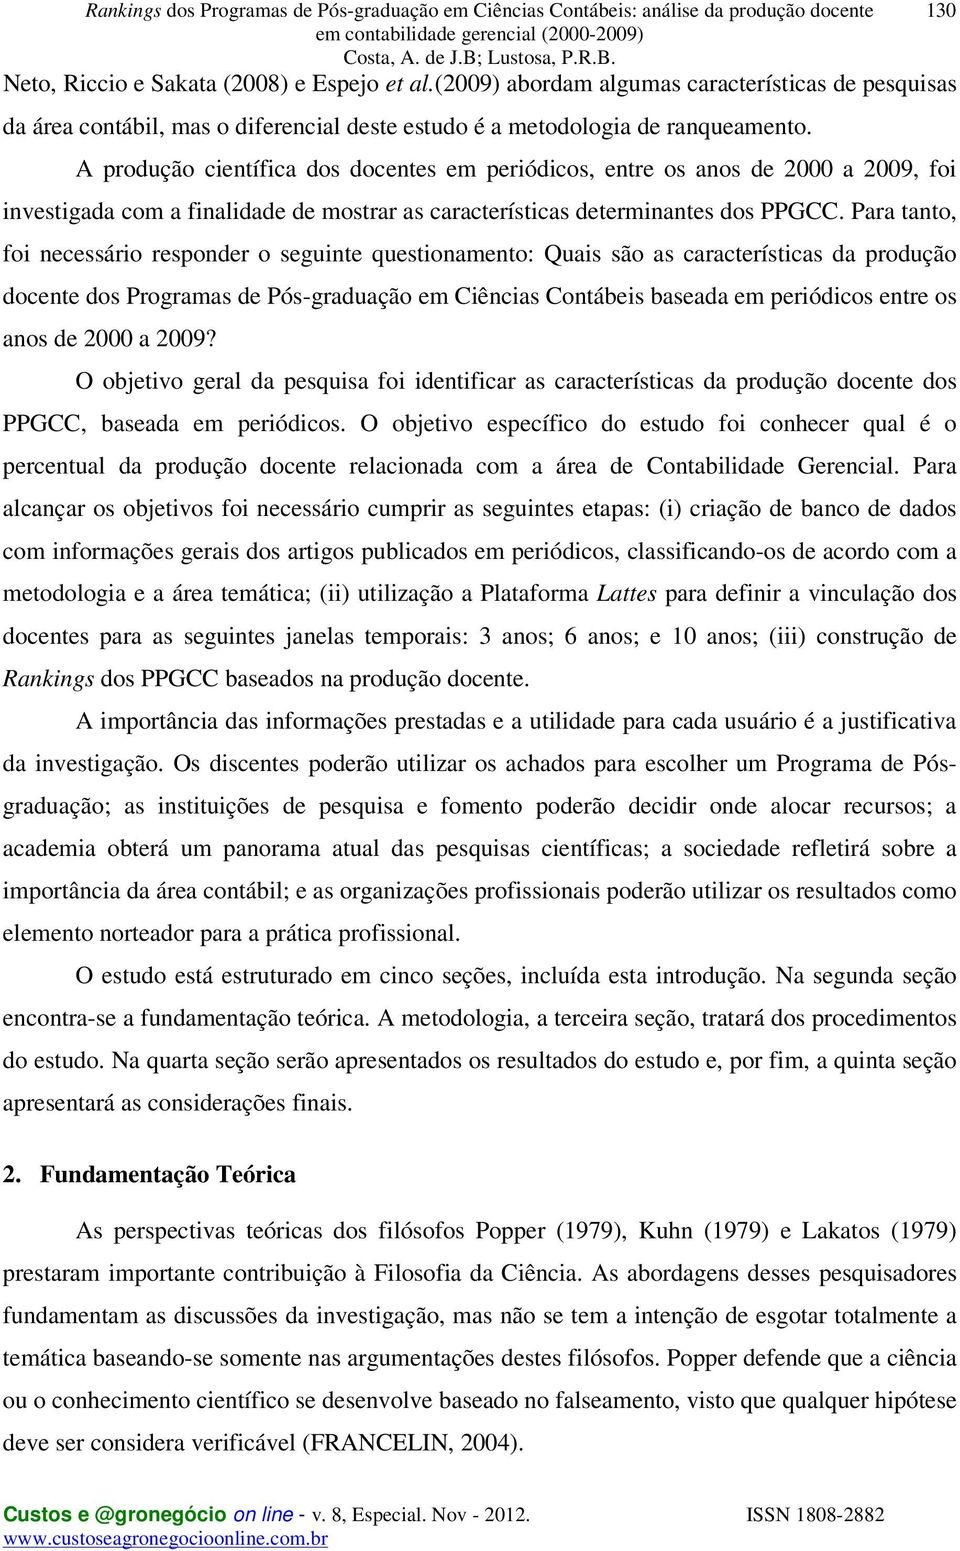 A produção científica dos docentes em periódicos, entre os anos de 2000 a 2009, foi investigada com a finalidade de mostrar as características determinantes dos PPGCC.